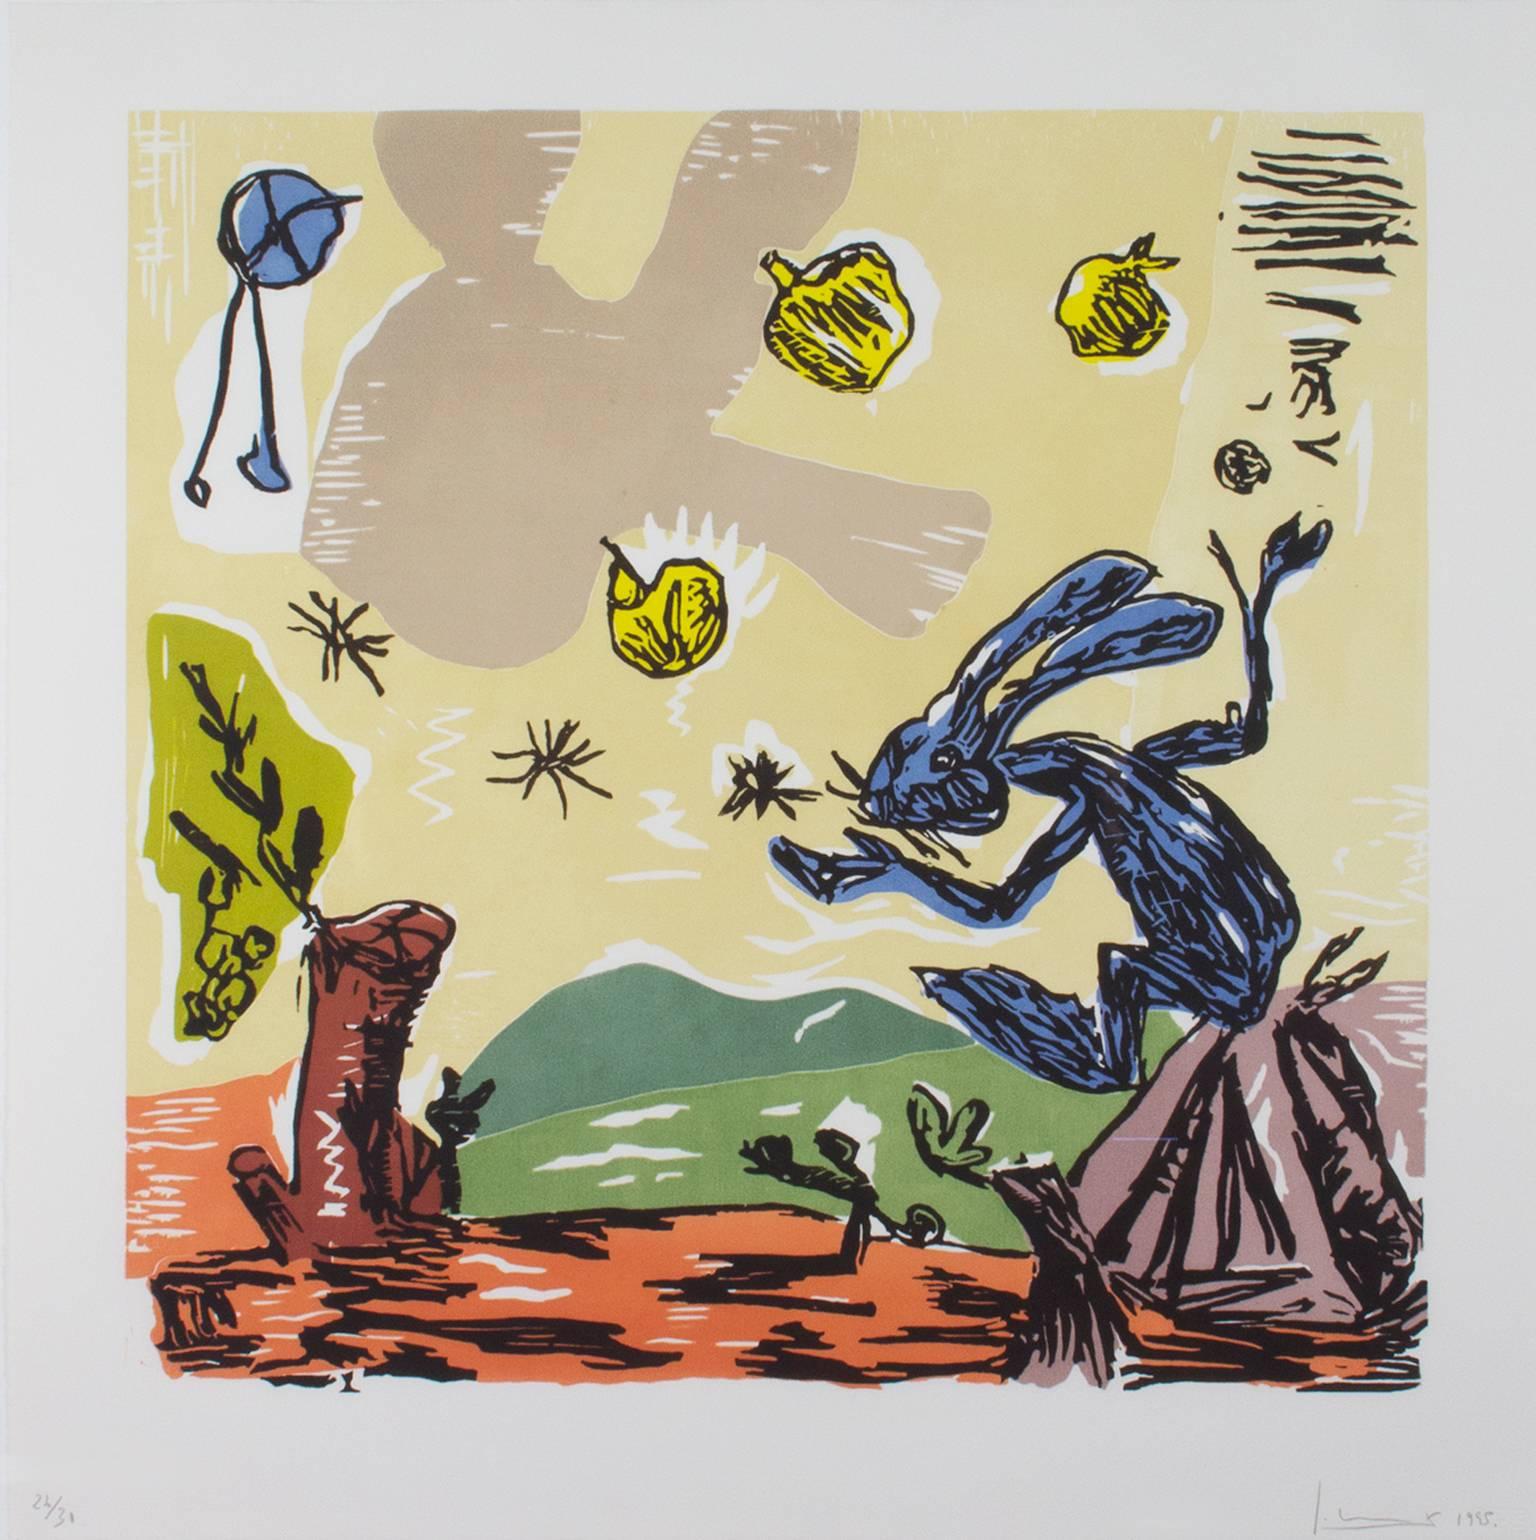 "Blue Bunny" est une gravure sur bois originale signée par l'artiste Santiago Moix. Il représente un lapin bleu jonglant avec des pommes jaunes. 

26 1/2" x 25 7/8" art
cadre de 29 1/8" x 29 3/4"

Santiago Moix (né en 1960) travaille dans une veine